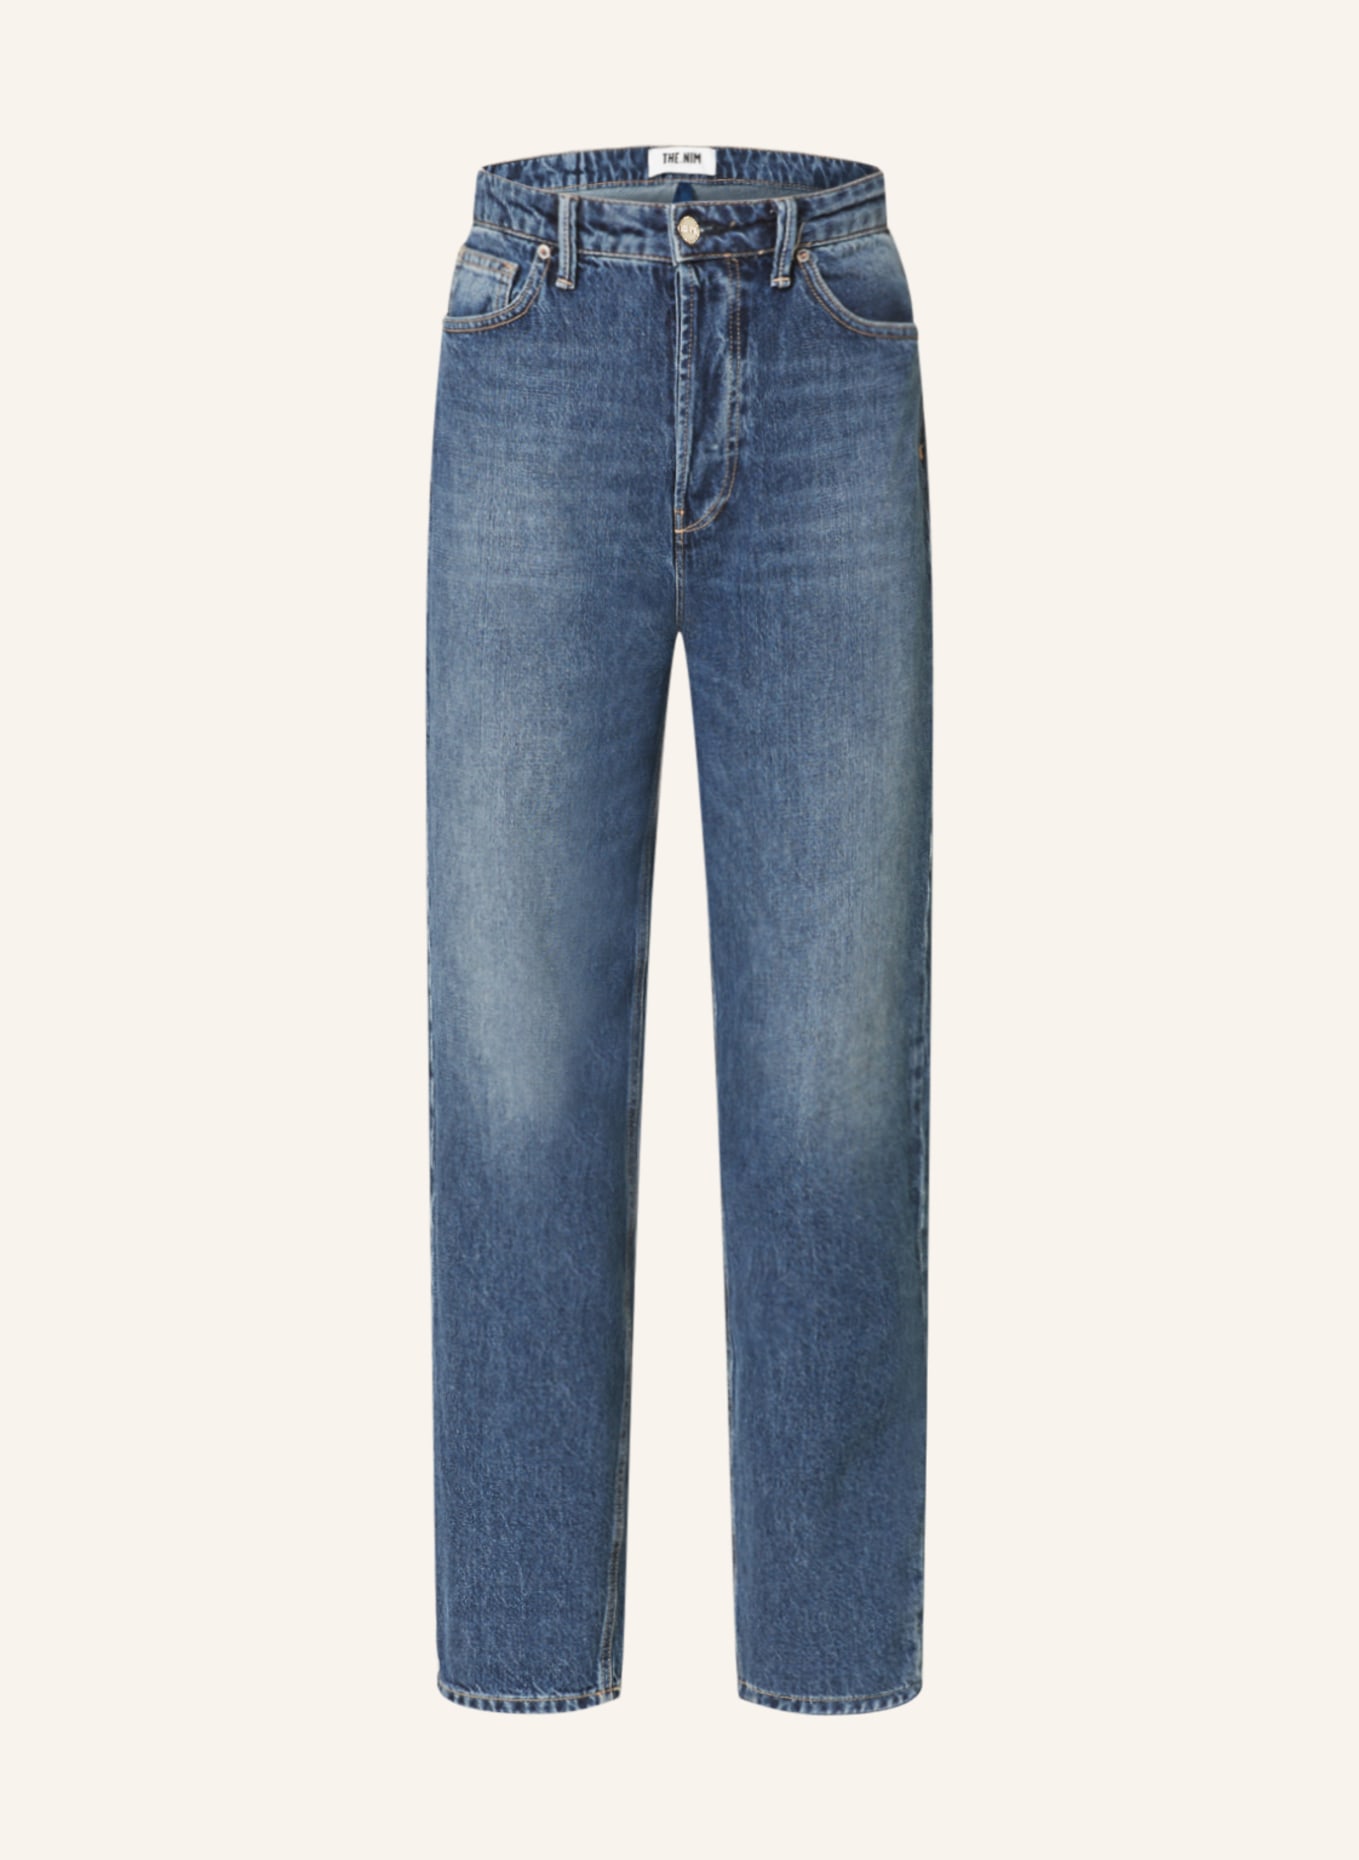 THE.NIM STANDARD Jeans SIENNA, Farbe: W722-DKW DARK WASHED BLUE (Bild 1)